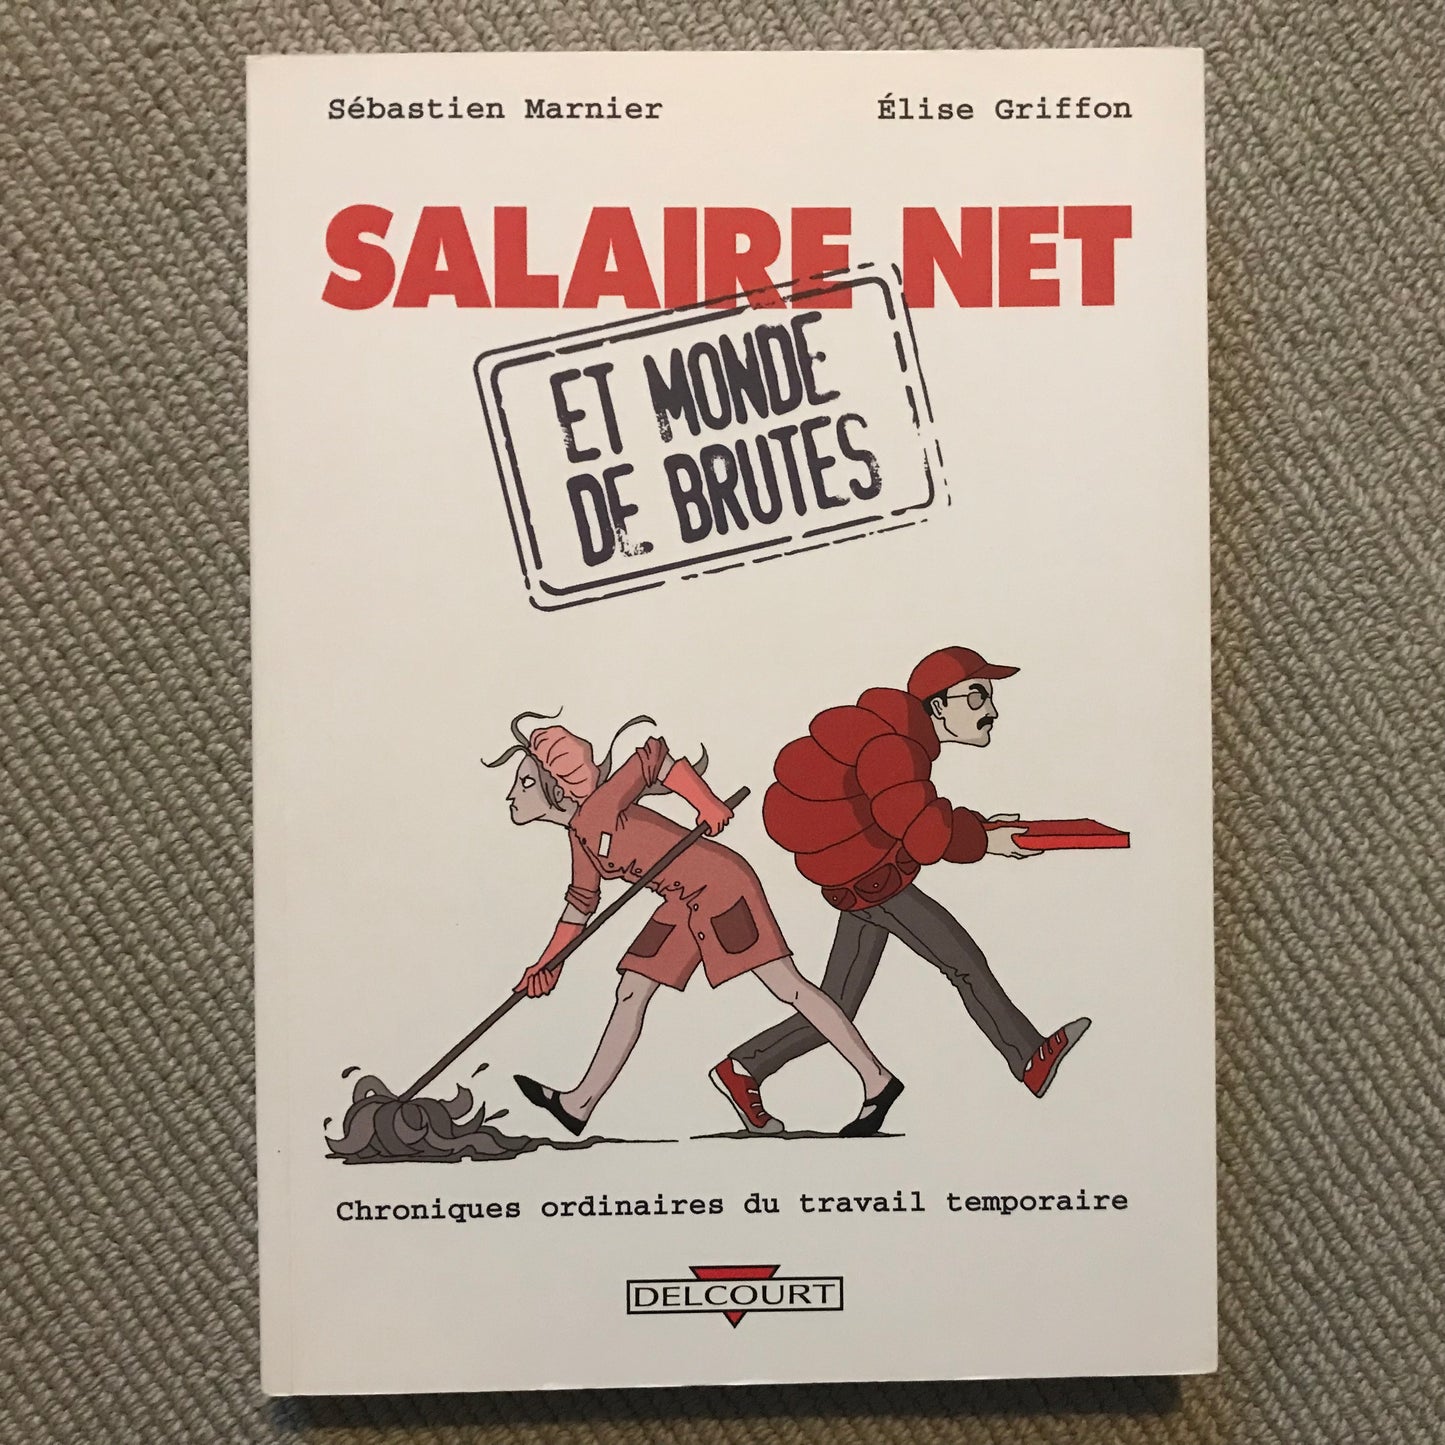 Salaire net et monde de brutes - Marnier, S. & Griffon, E.